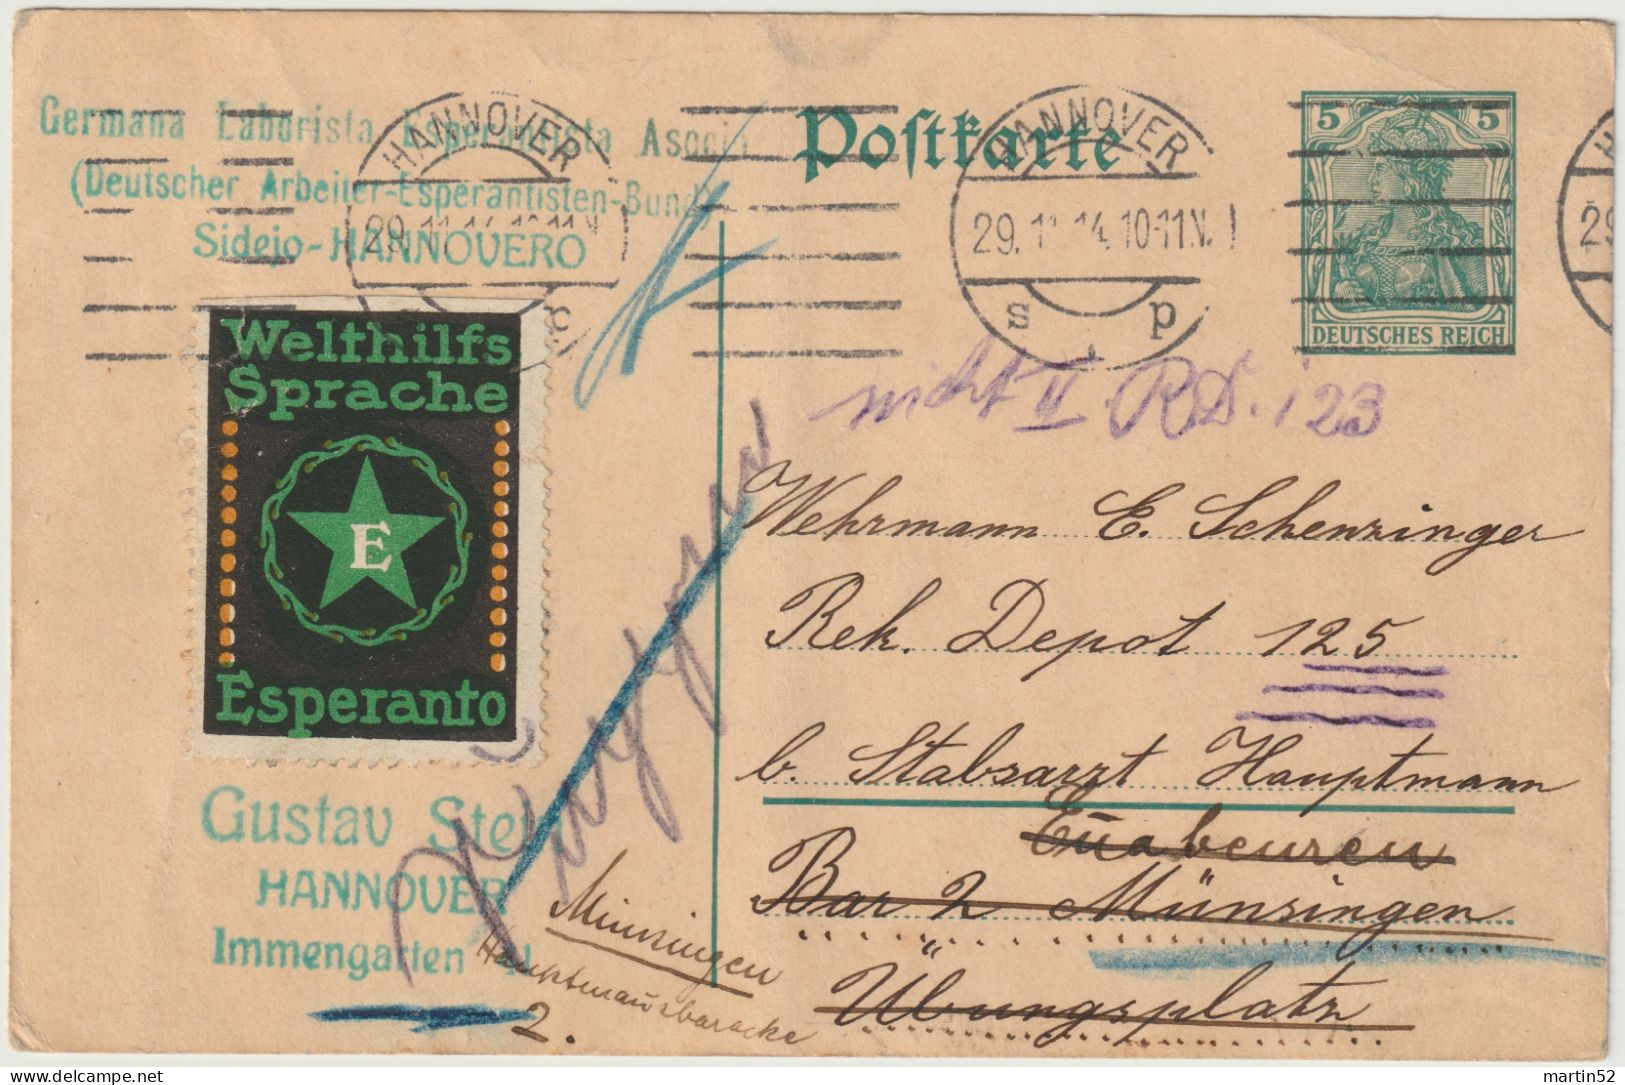 Deutsches Reich Allemagne Germany 1914: Postkarte Mit Vignette "Welthilfs-Sprache Esperanto" Mit ⊙ HANNOVER 29.11.14 - Esperanto